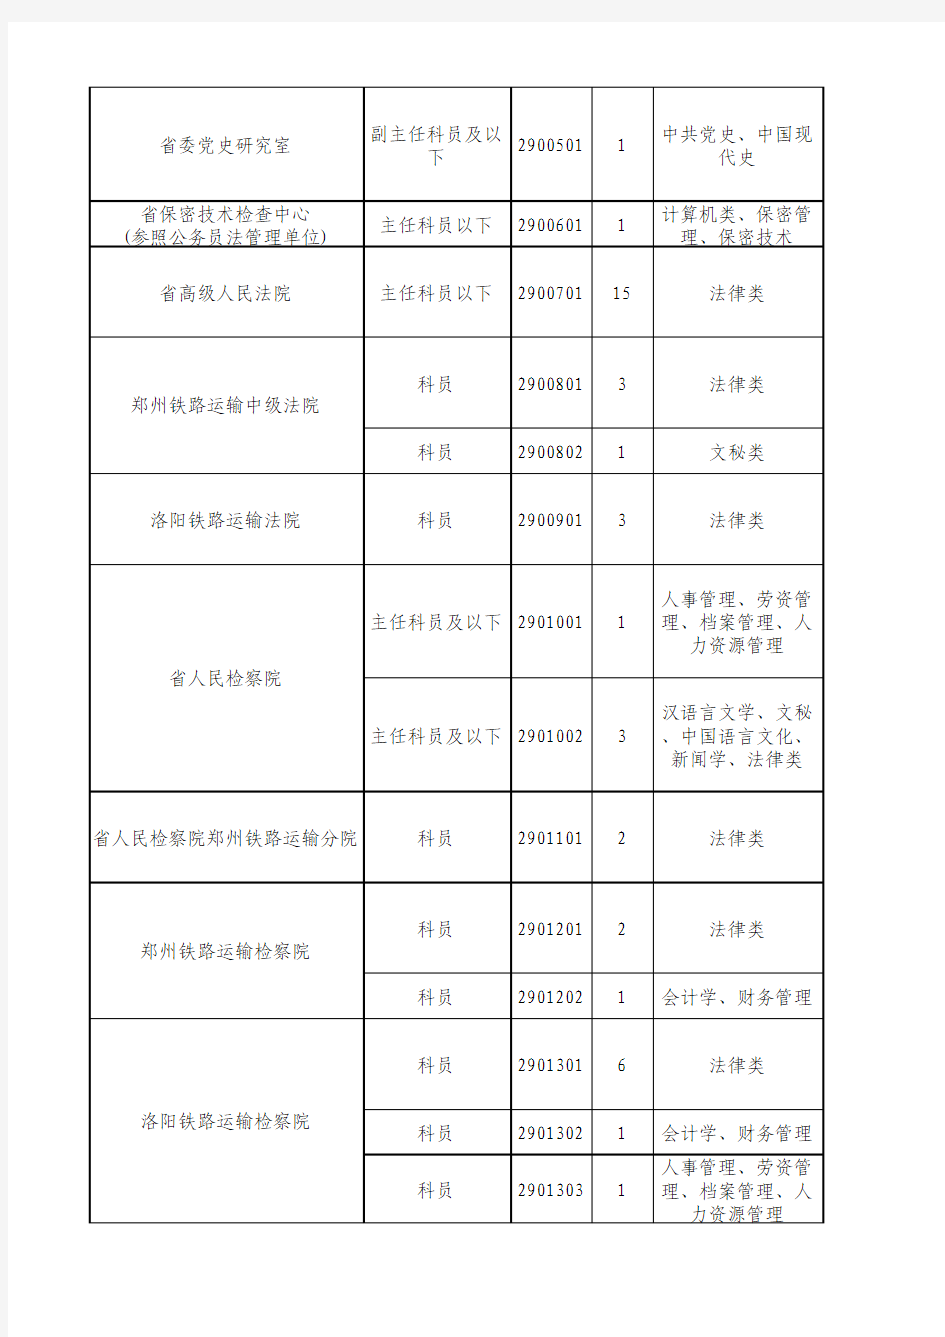 河南省2017年统一考试录用公务员拟录用职位表